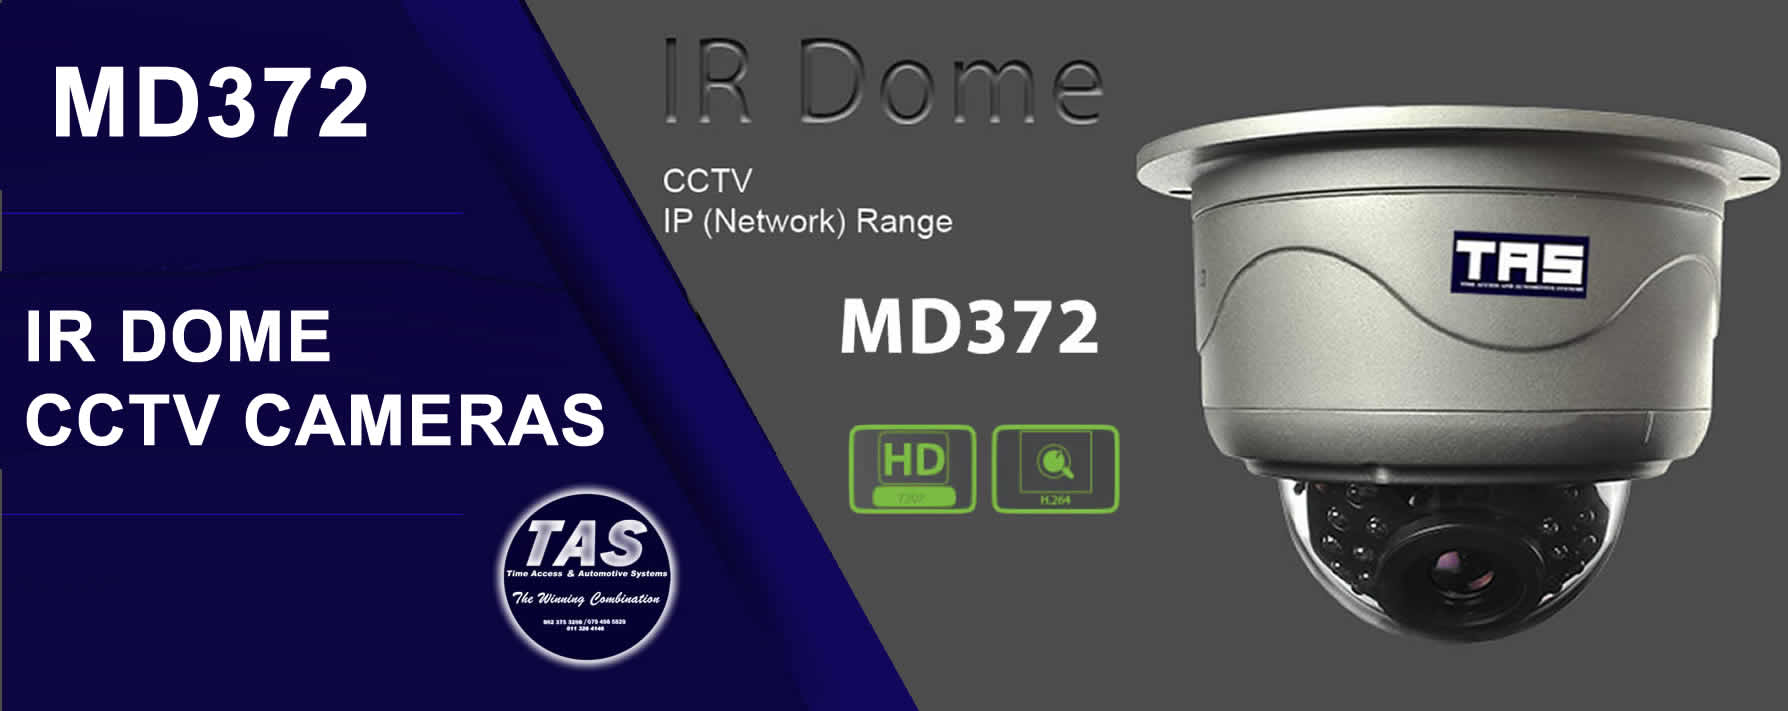 MD 532 CCTV galaxy dome Cameras-security contro banner